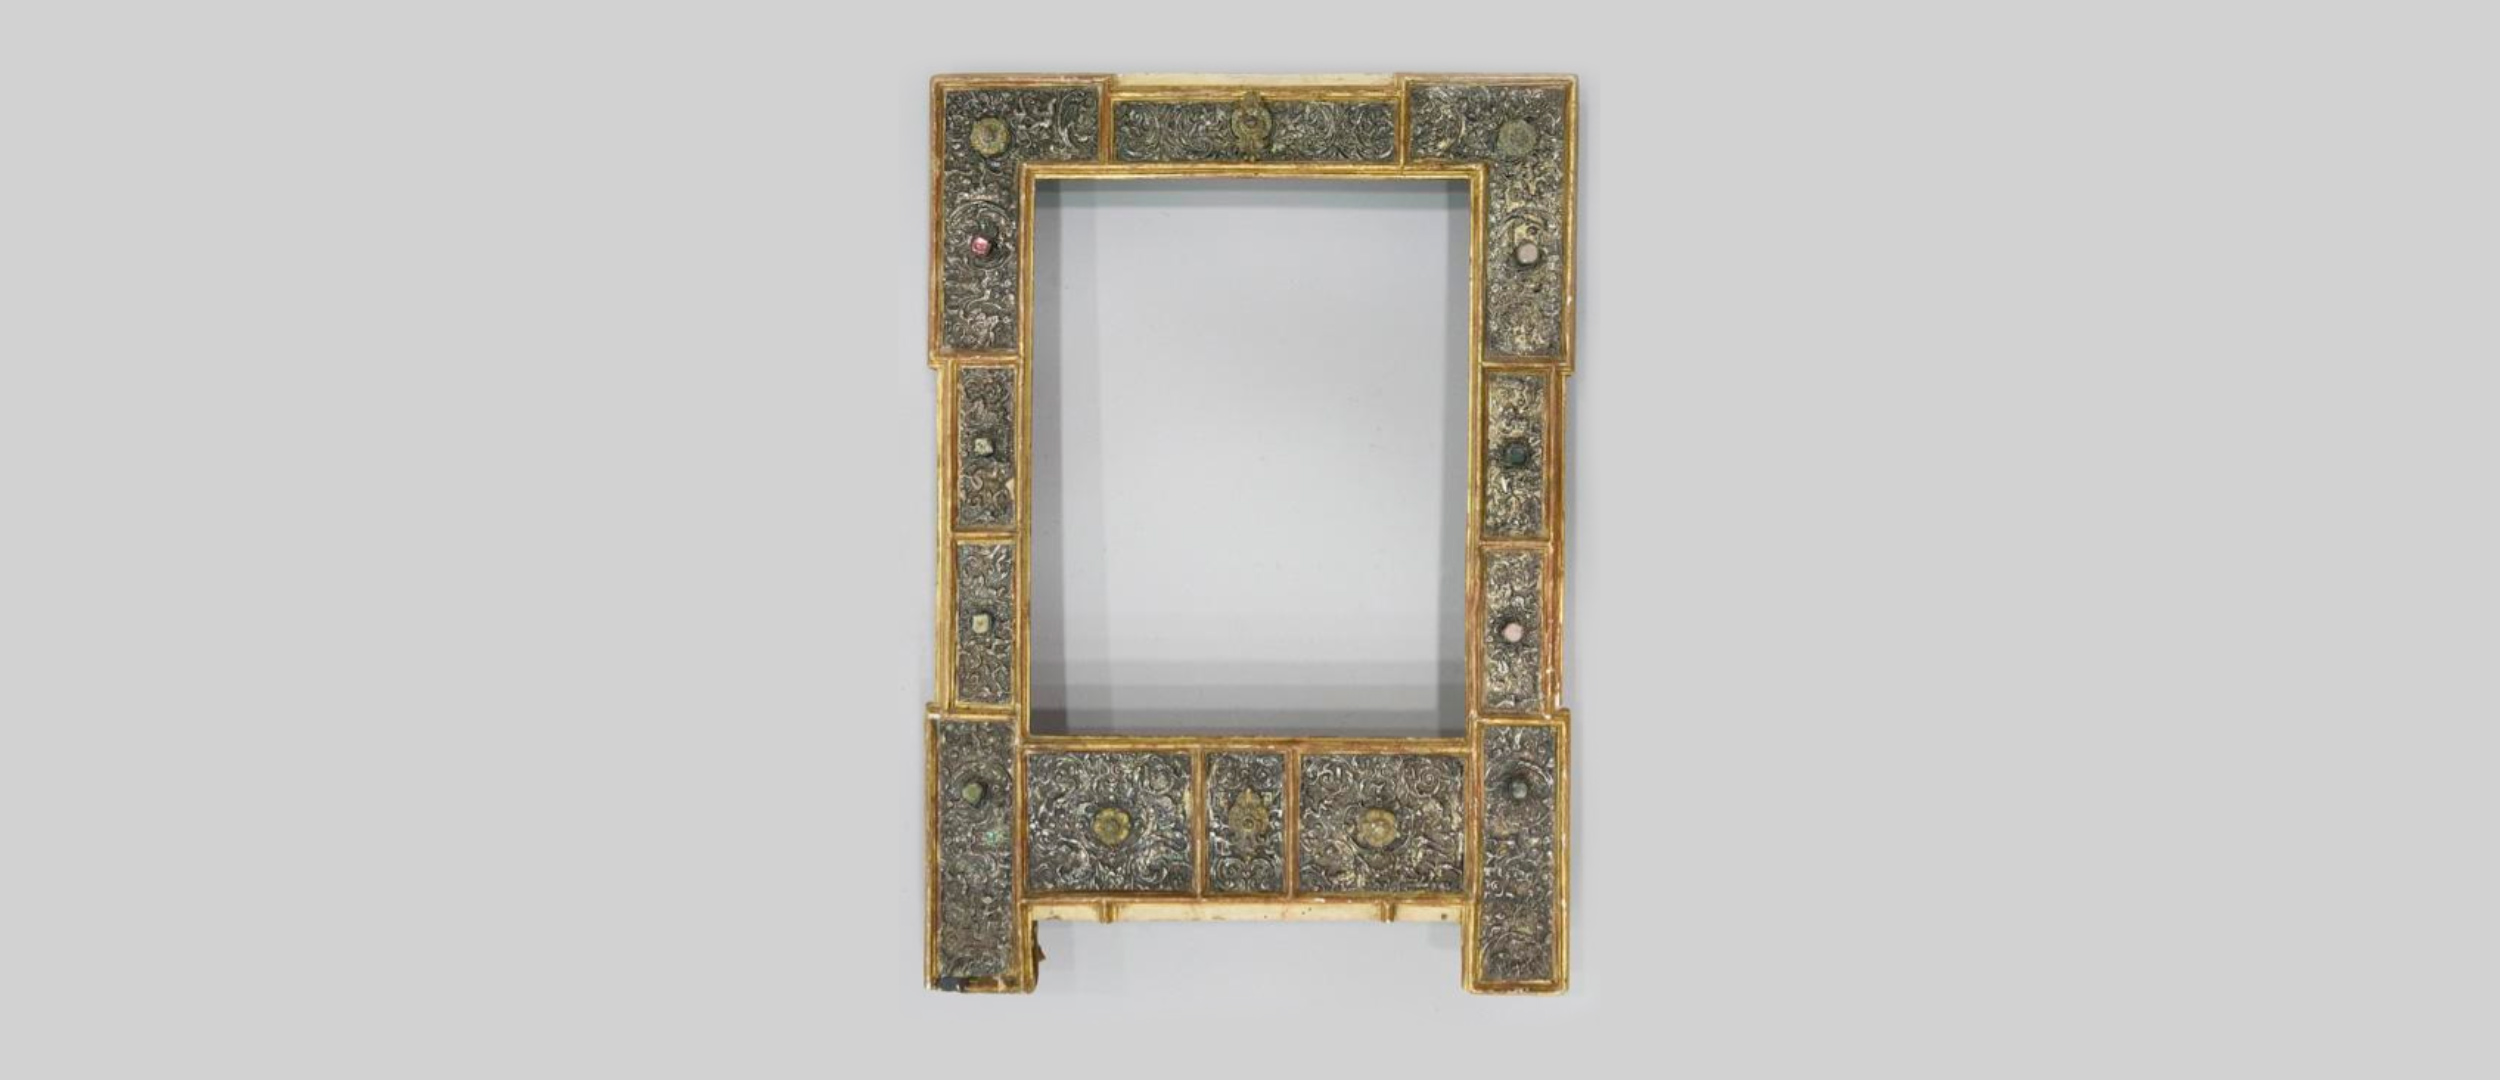 Retiro saca a la venta un interesante marco guarnecido en plata mejicana del S. XVII